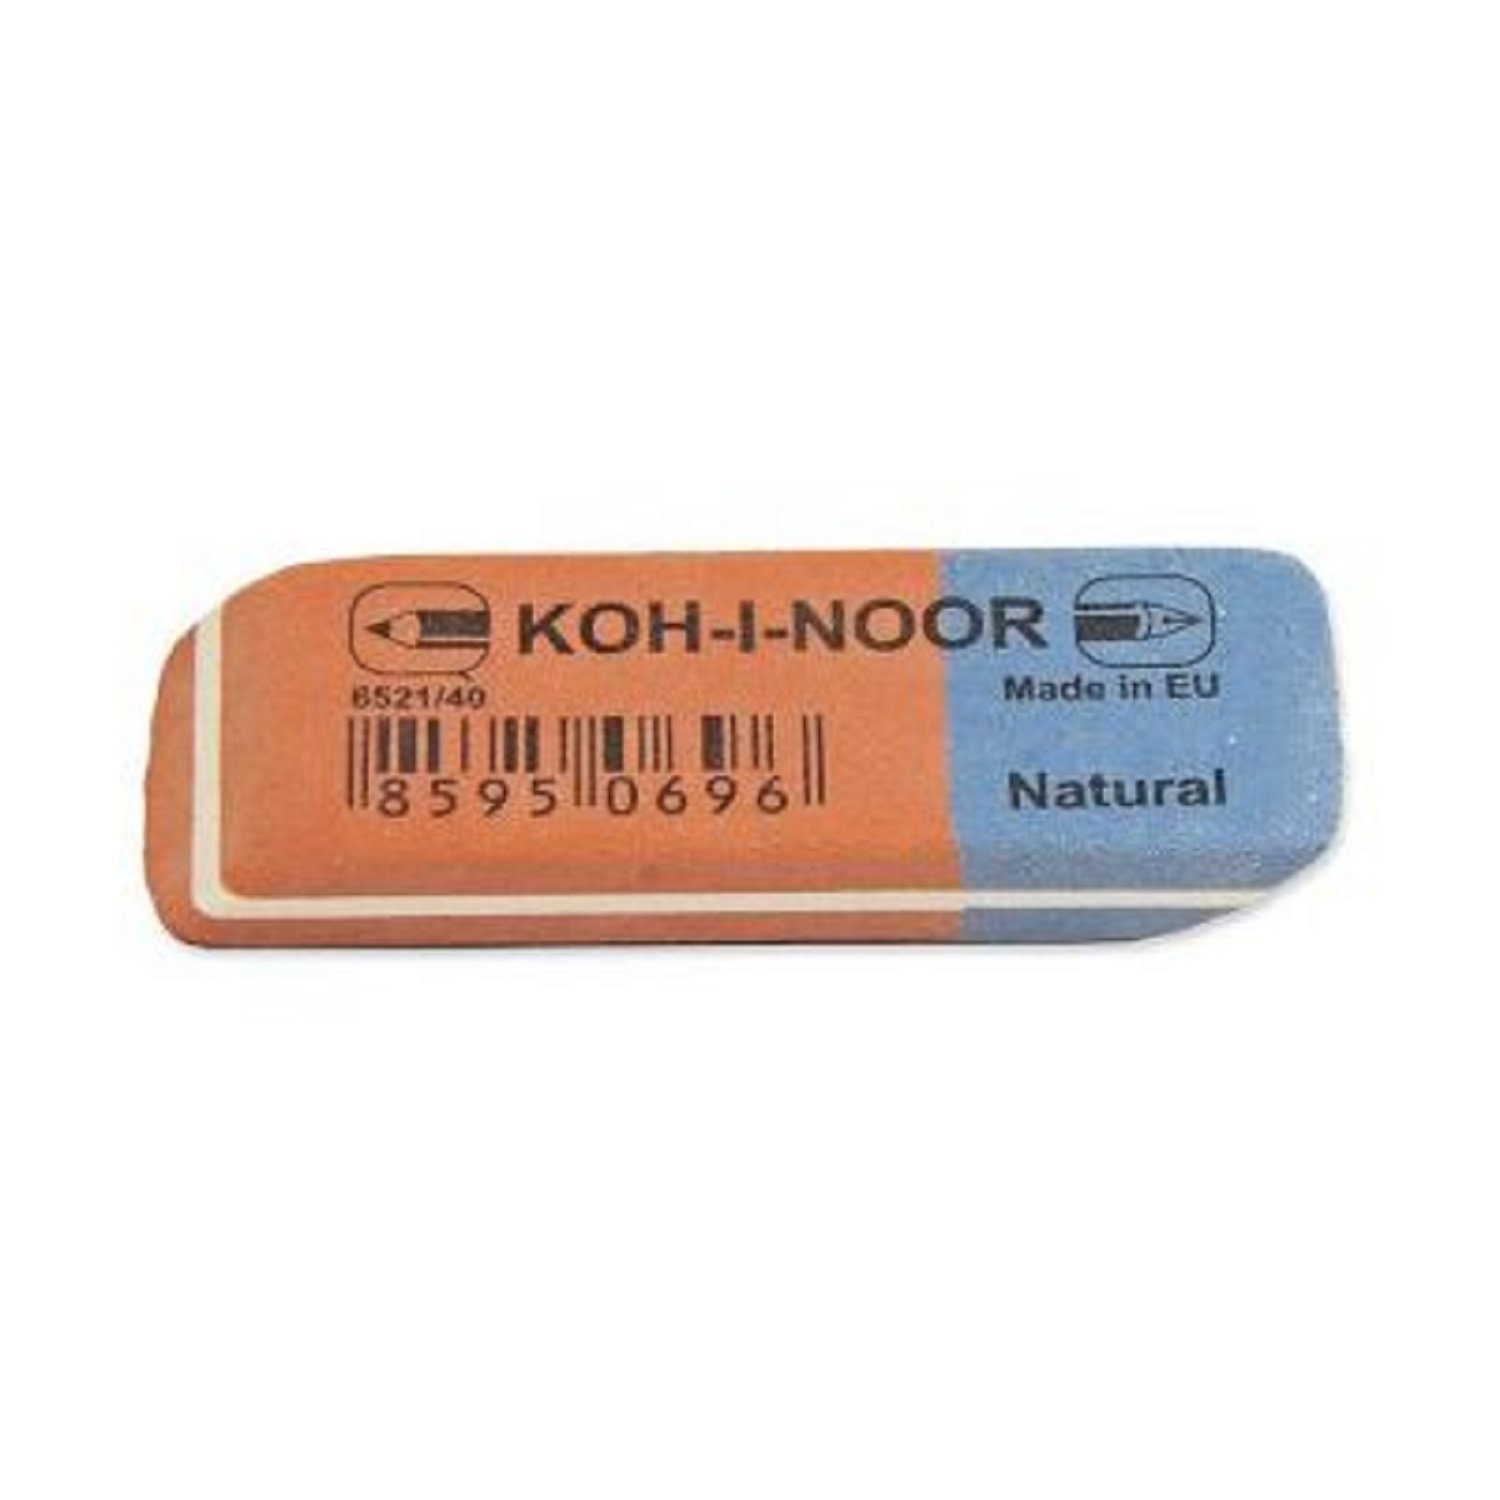 Rubber Erasers - Natural Erasers, Koh-I-Noor, L & C Hardtmuth